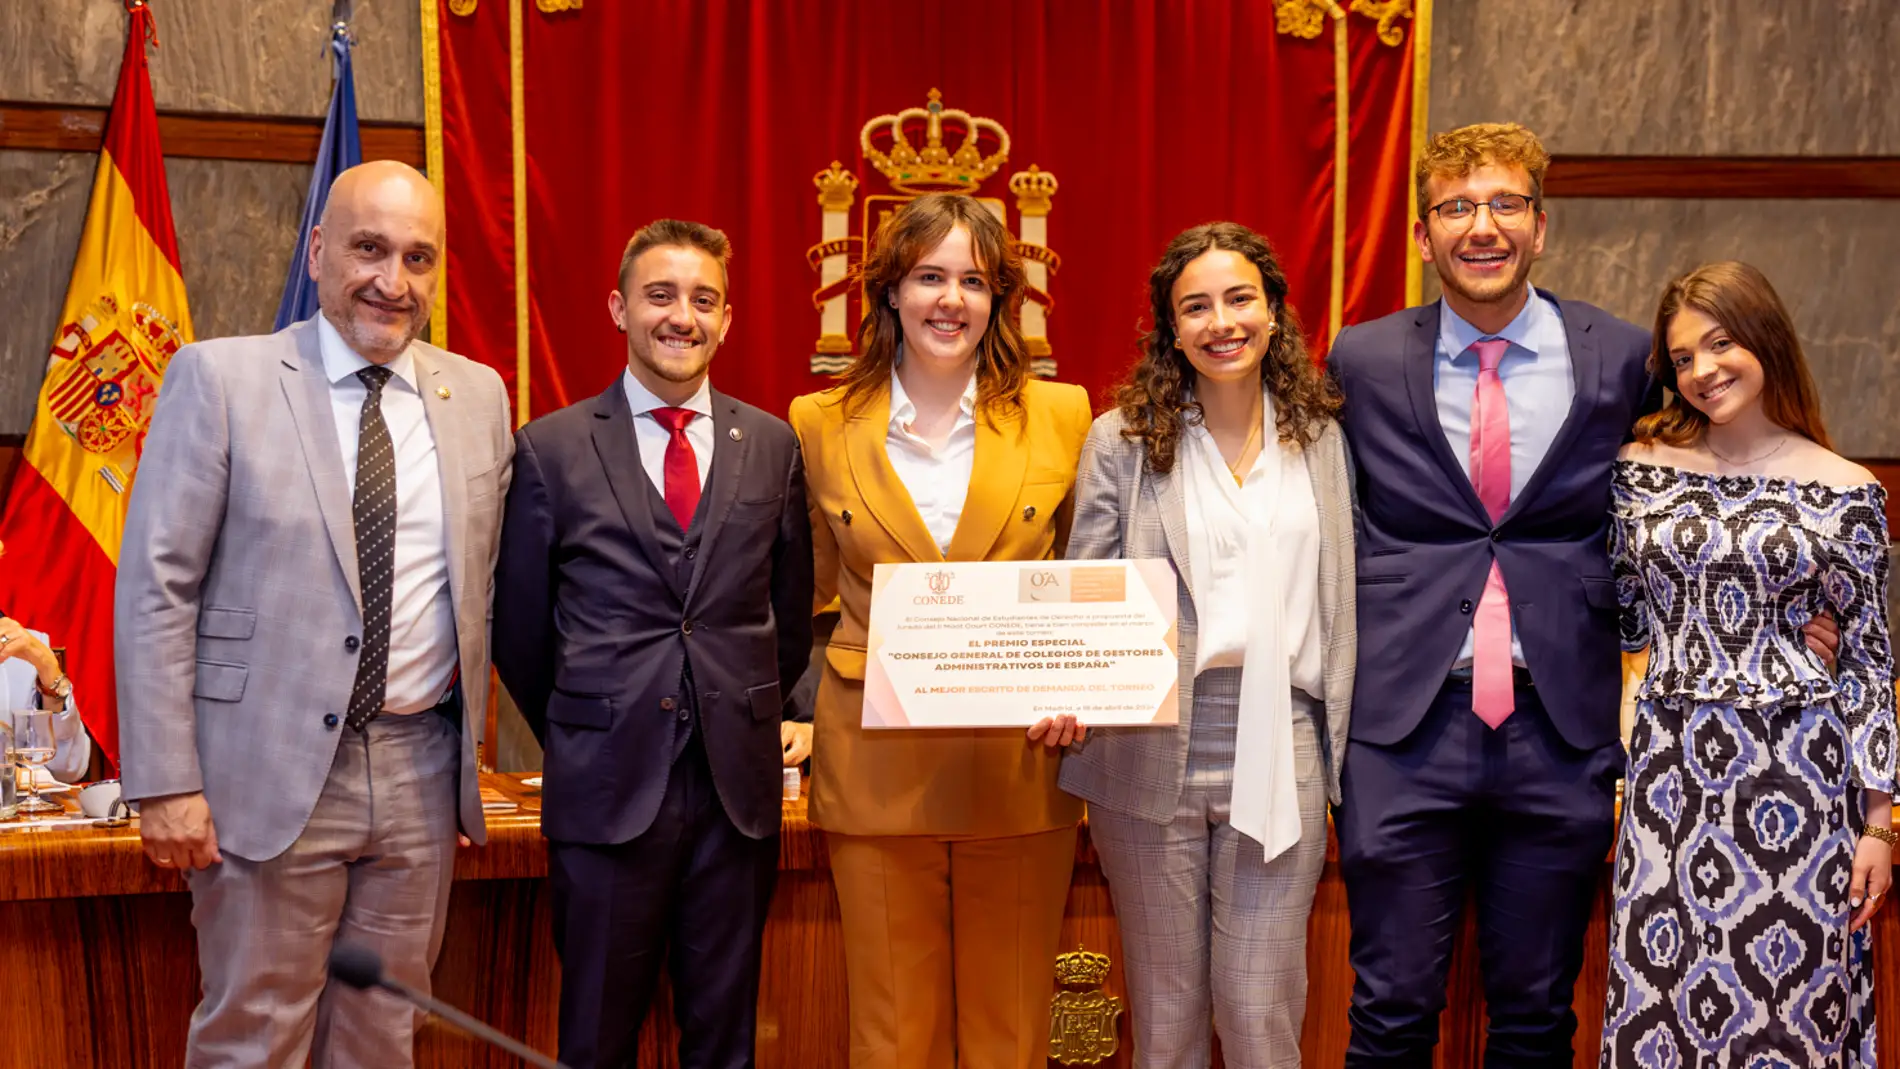 Equipo ganador el II Moot Court CONEDE formado por estudiantes de la Universidad de Alicante